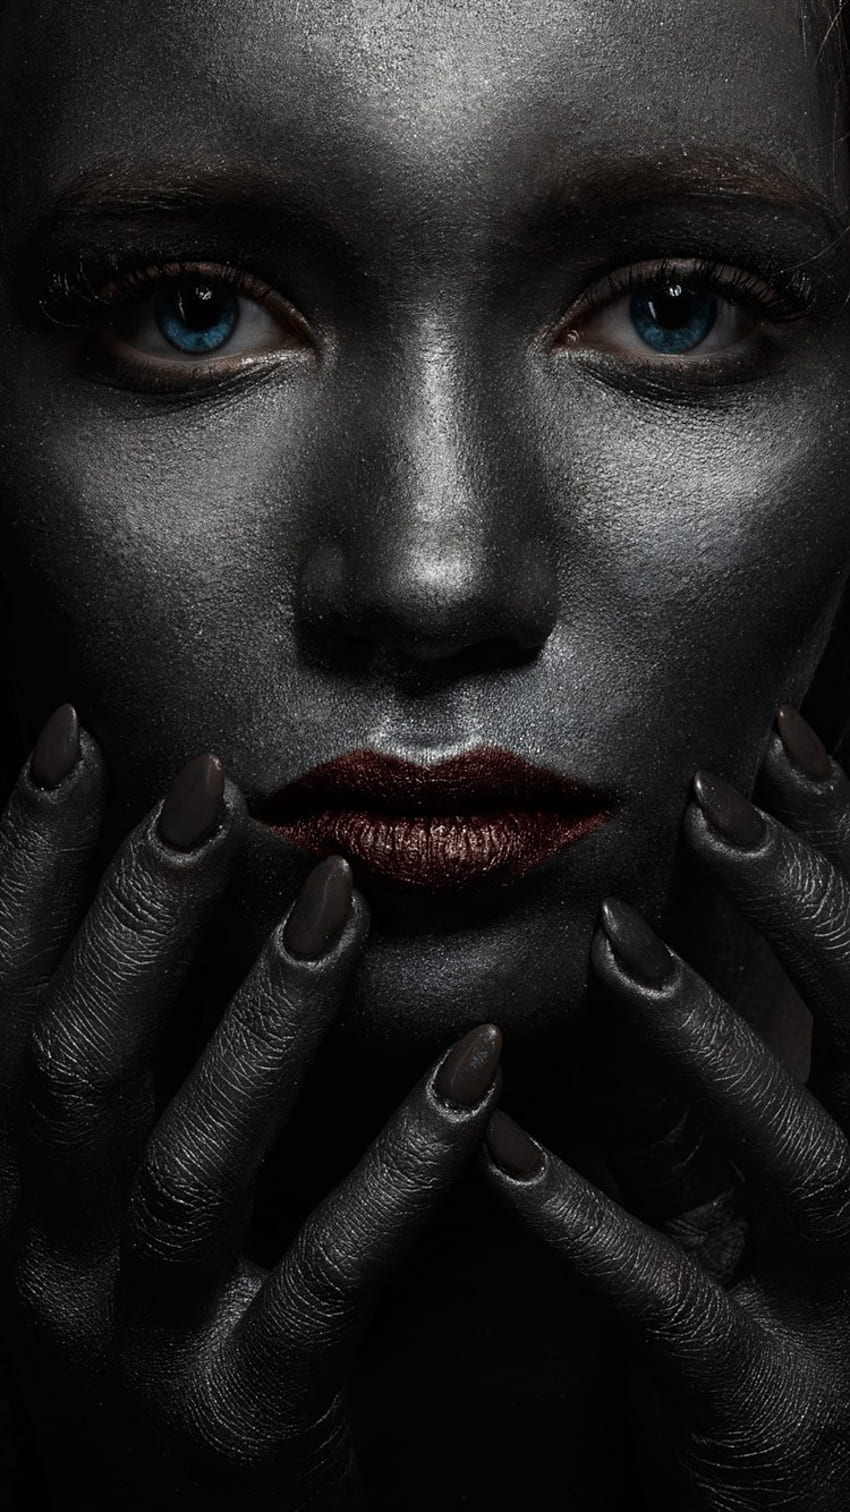 Mädchen mit blauen Augen, Dunkelheit, viele Hände, Horror Q, Augen im dunklen iPhone HD-Handy-Hintergrundbild